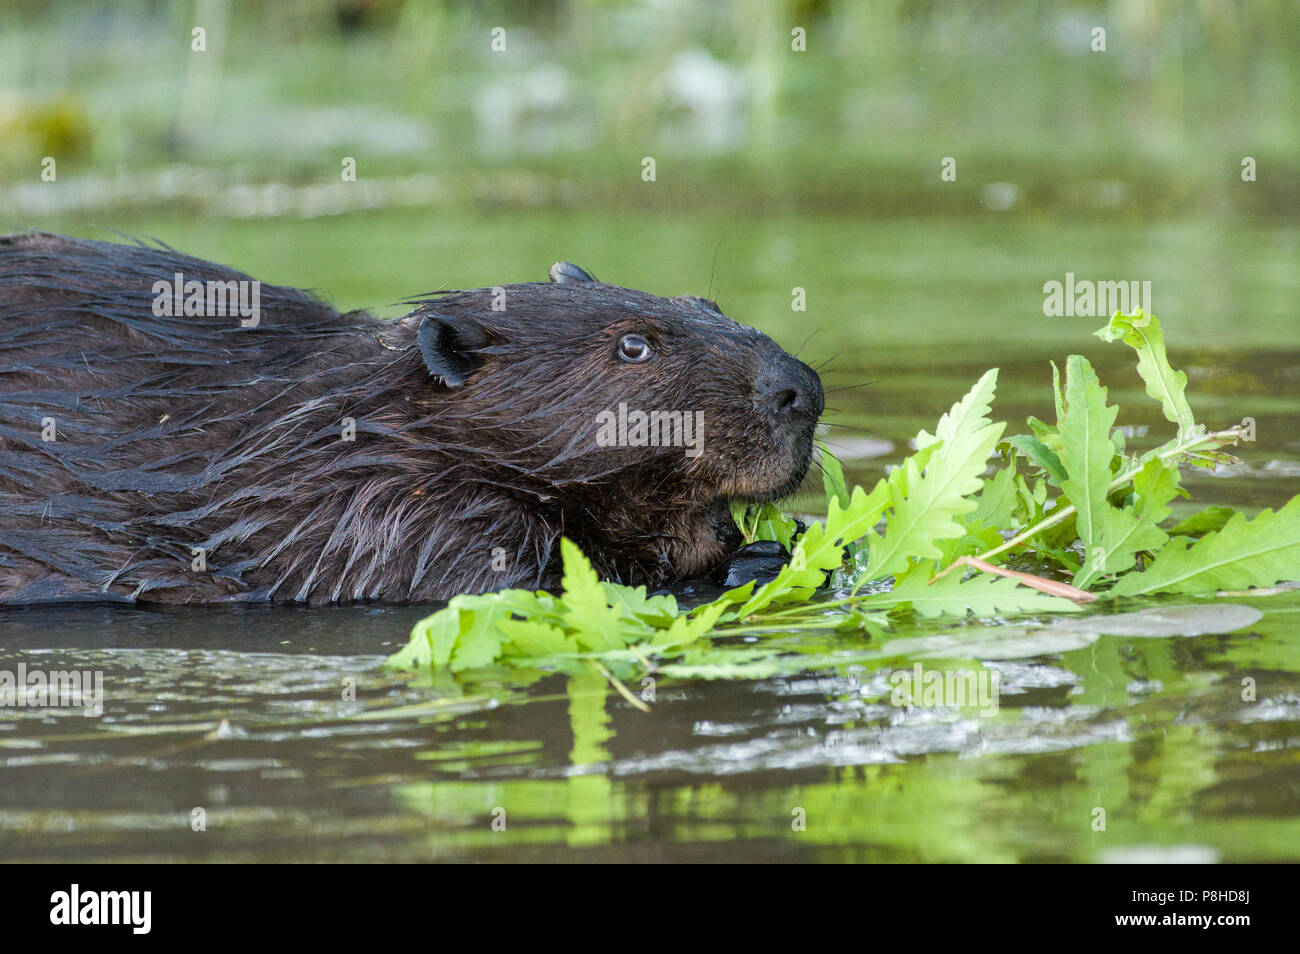 Un castor du Canada (Castor canadensis) manger des plantes dans l'eau. Banque D'Images